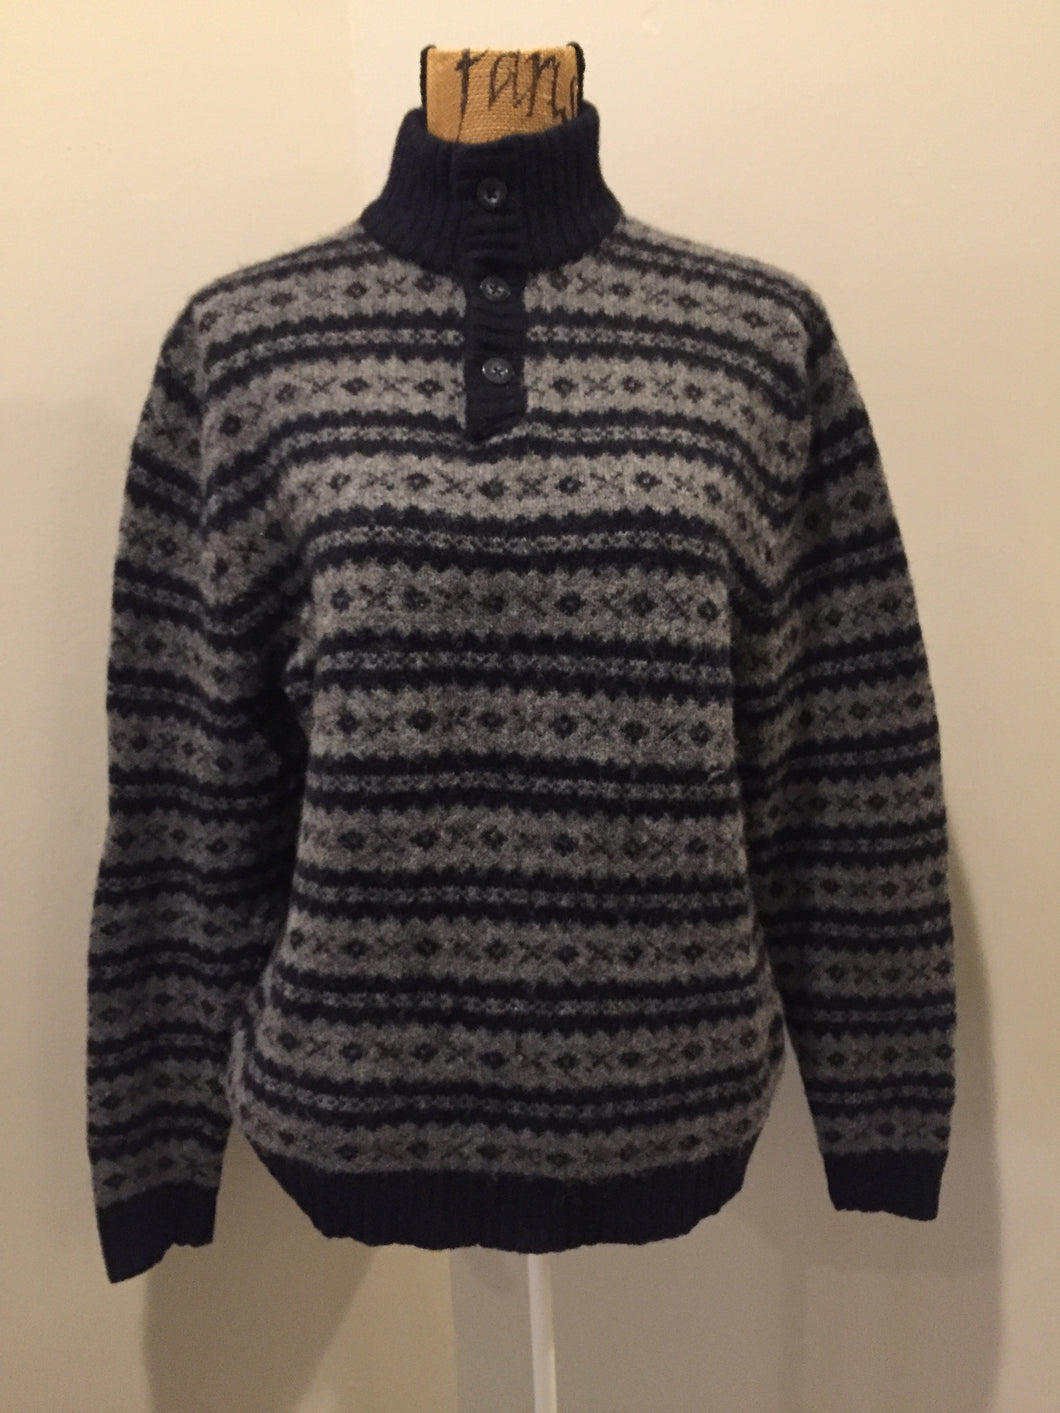 Kingspier Vintage - Eddie Bauer navy and grey wool sweater. Size medium.